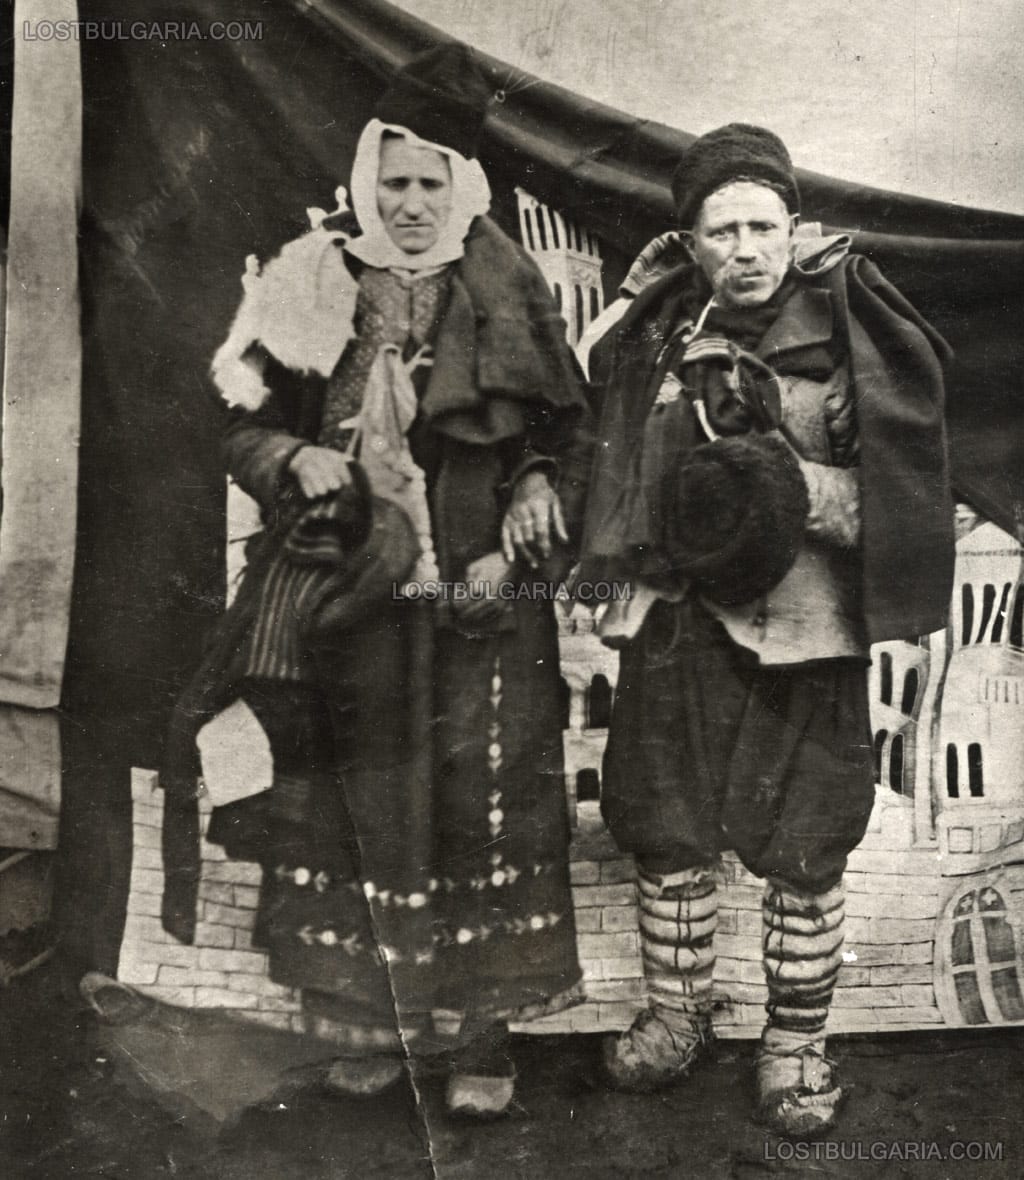 Нова Загора, 1924 г. Снимката е надписана: "Най-големата кражба на панаира на града са откраднали повече стока от 25 хиляди лева - лицата заловени и арестувани в града. Дедо и баба крали."